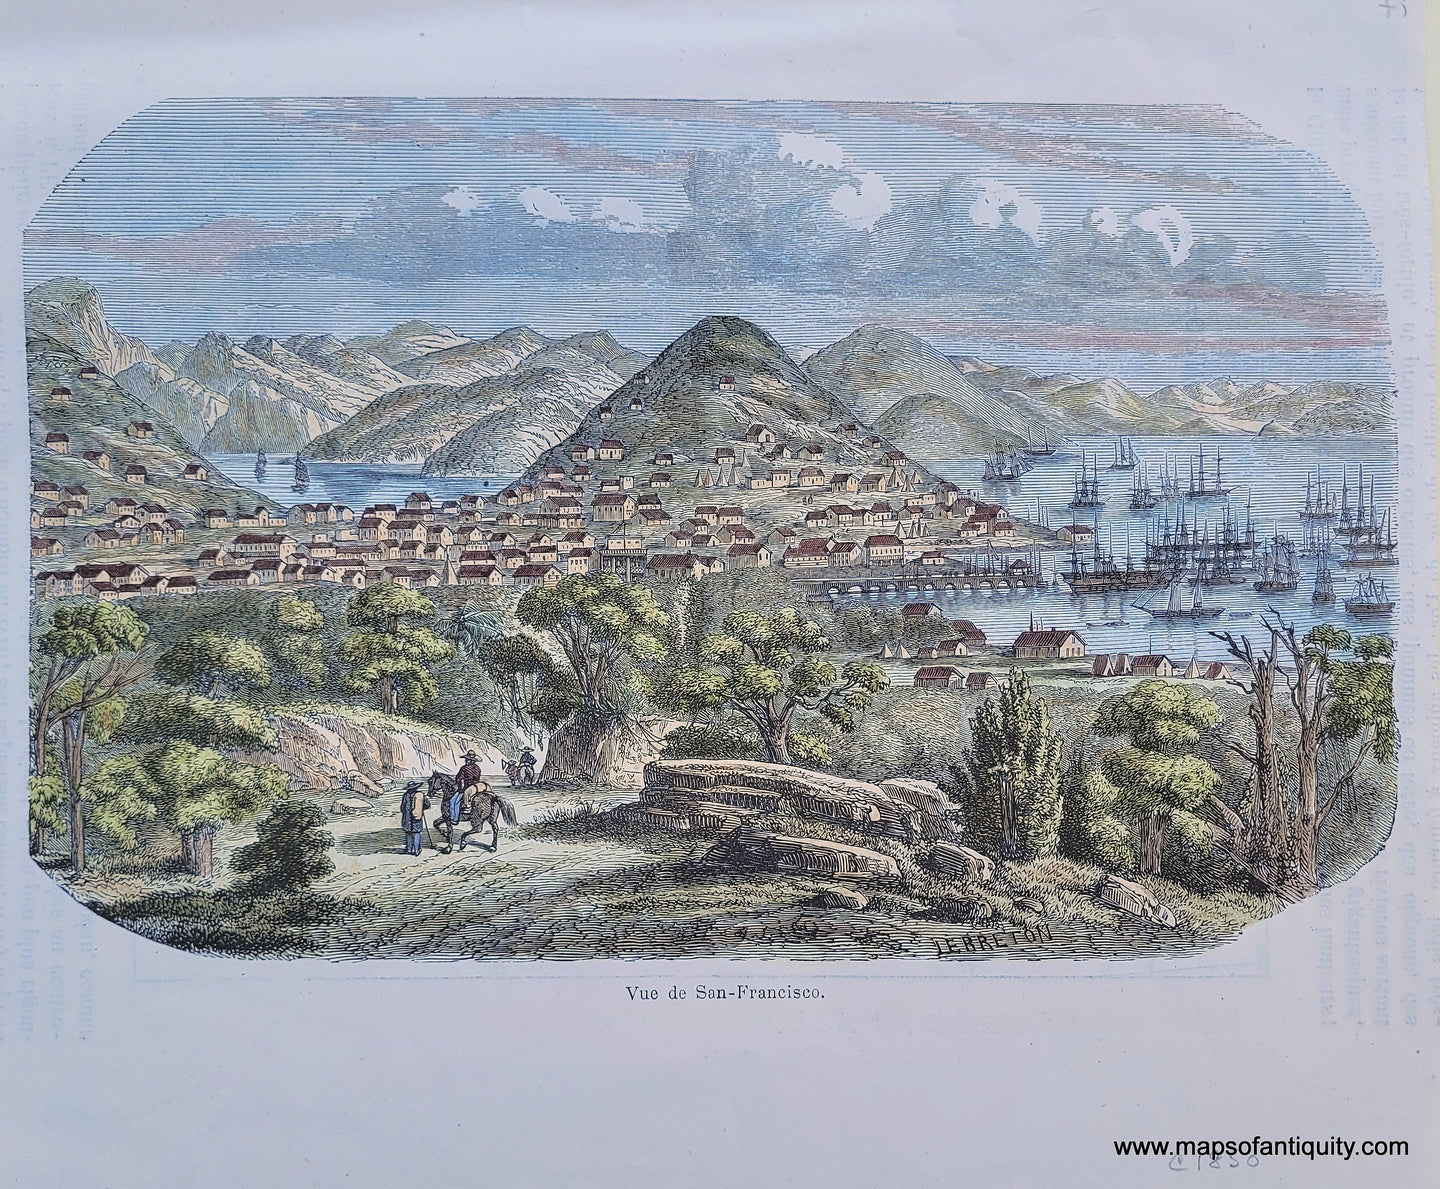 Genuine-Antique-Print-Vue-de-San-Francisco-1850-unknown-Maps-Of-Antiquity